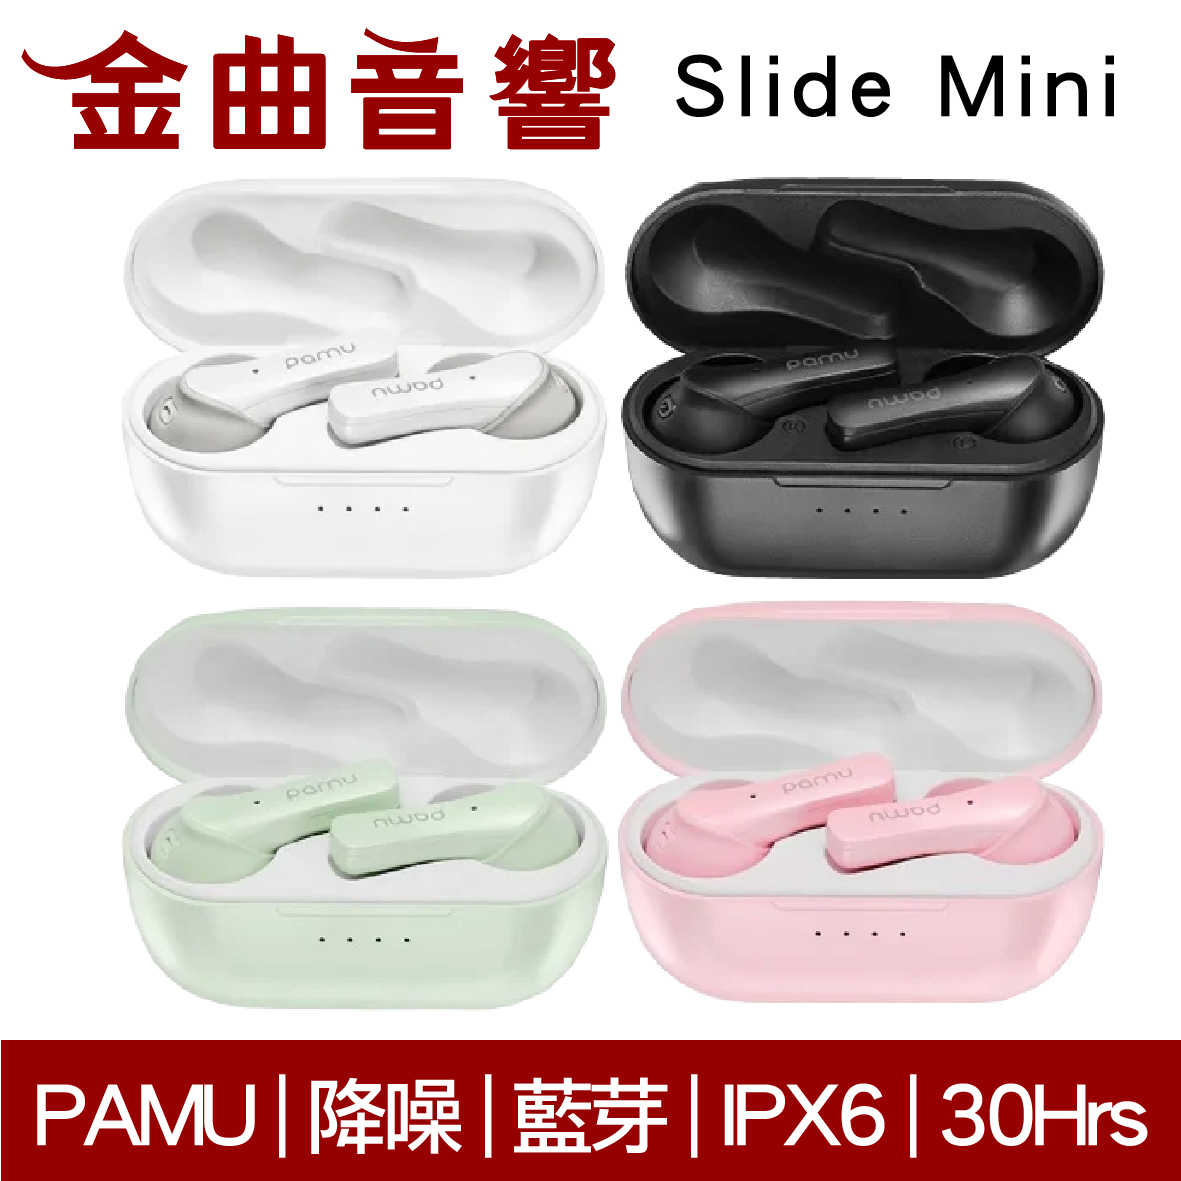 PaMu Slide Mini 粉 降噪 IPX6 通話 雙麥克風 真無線 藍芽 耳機 | 金曲音響